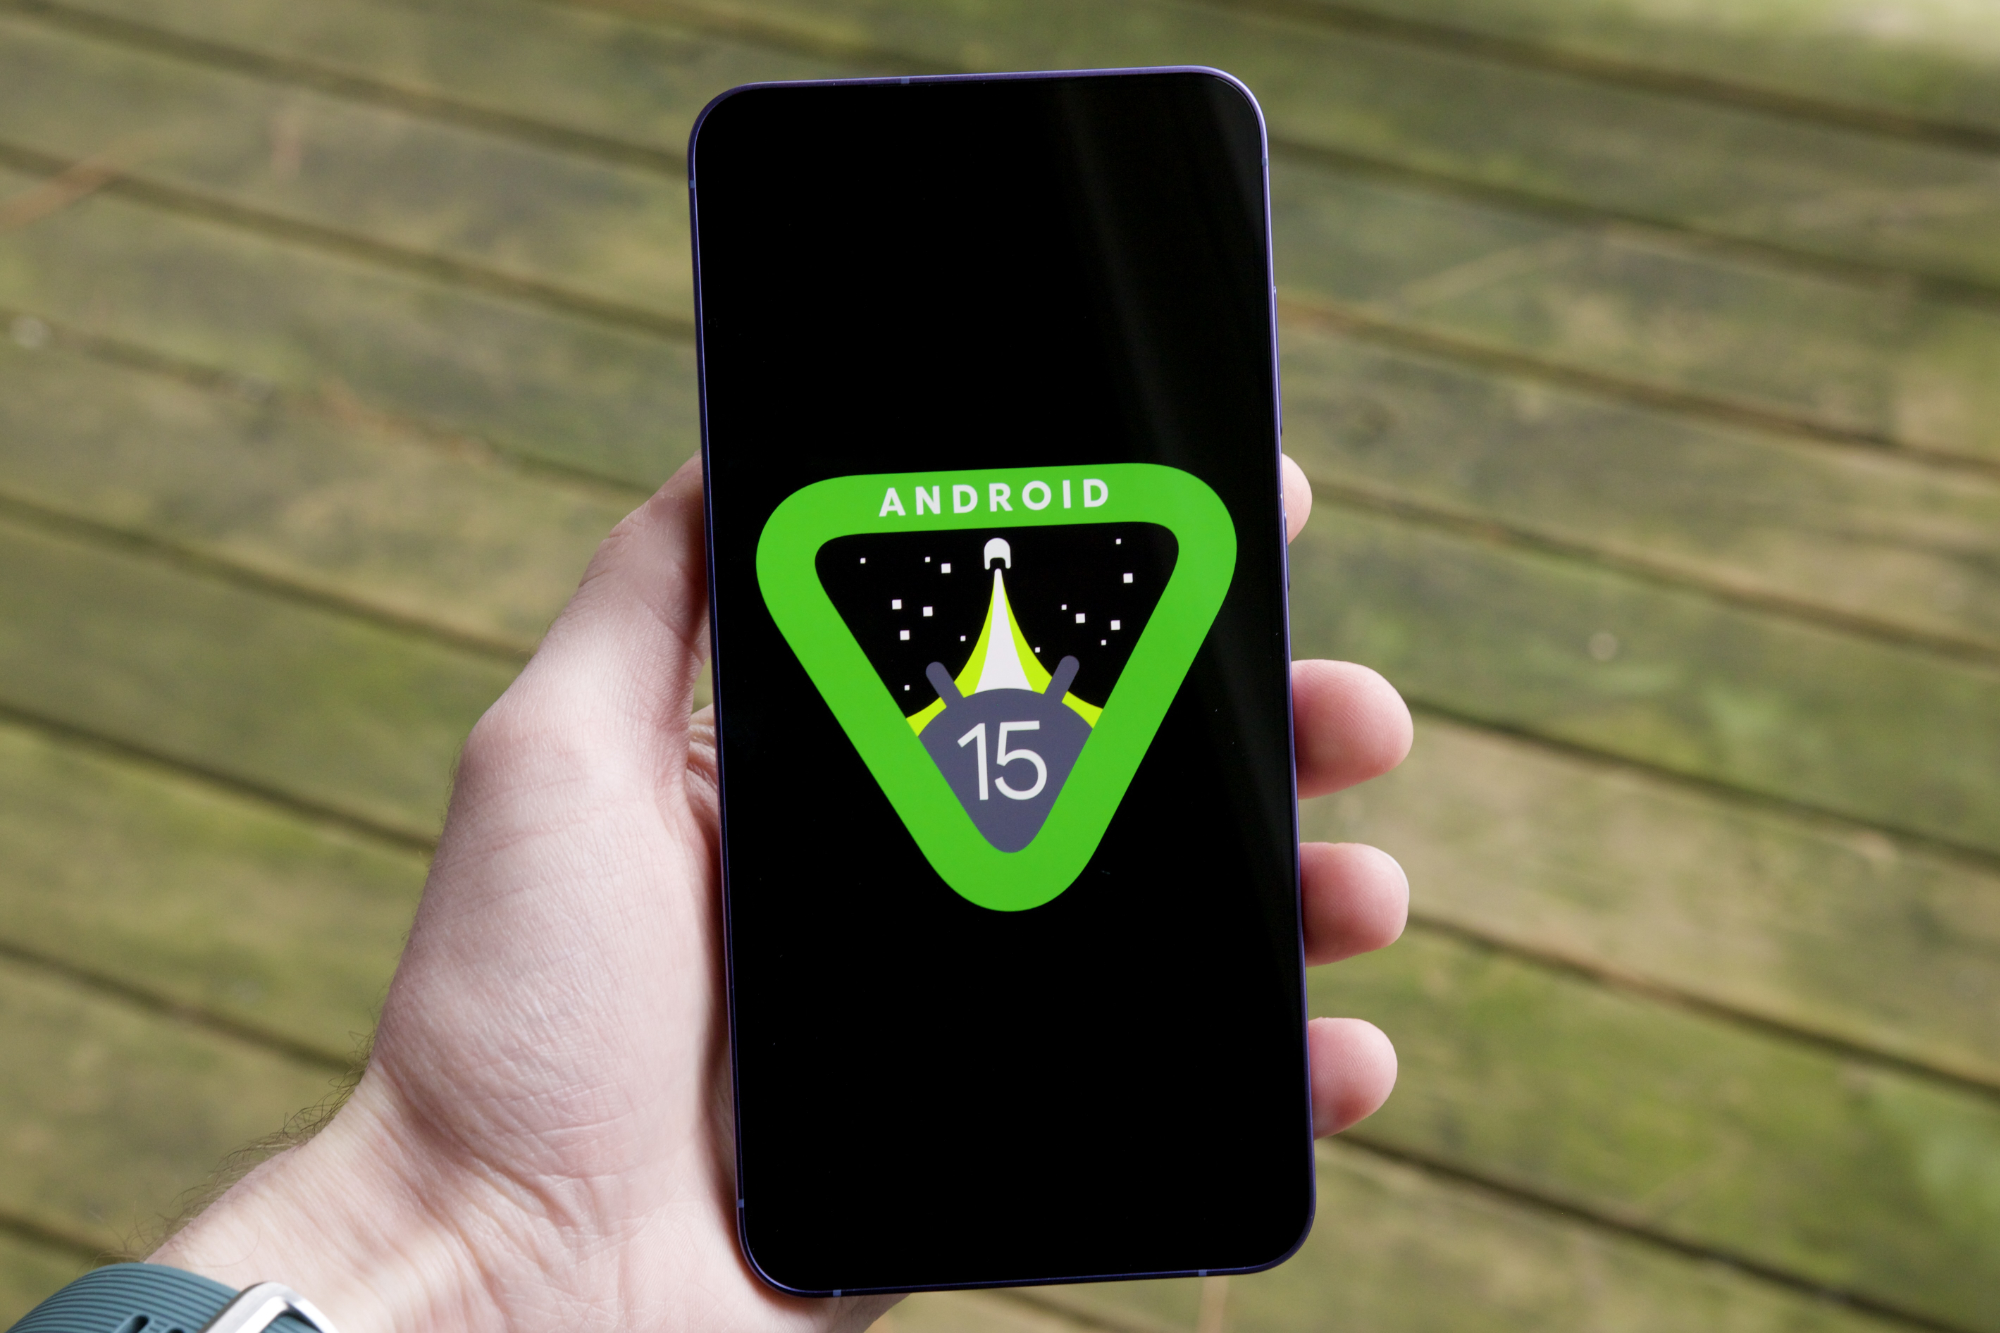 El logotipo de Android 15 en un smartphone.